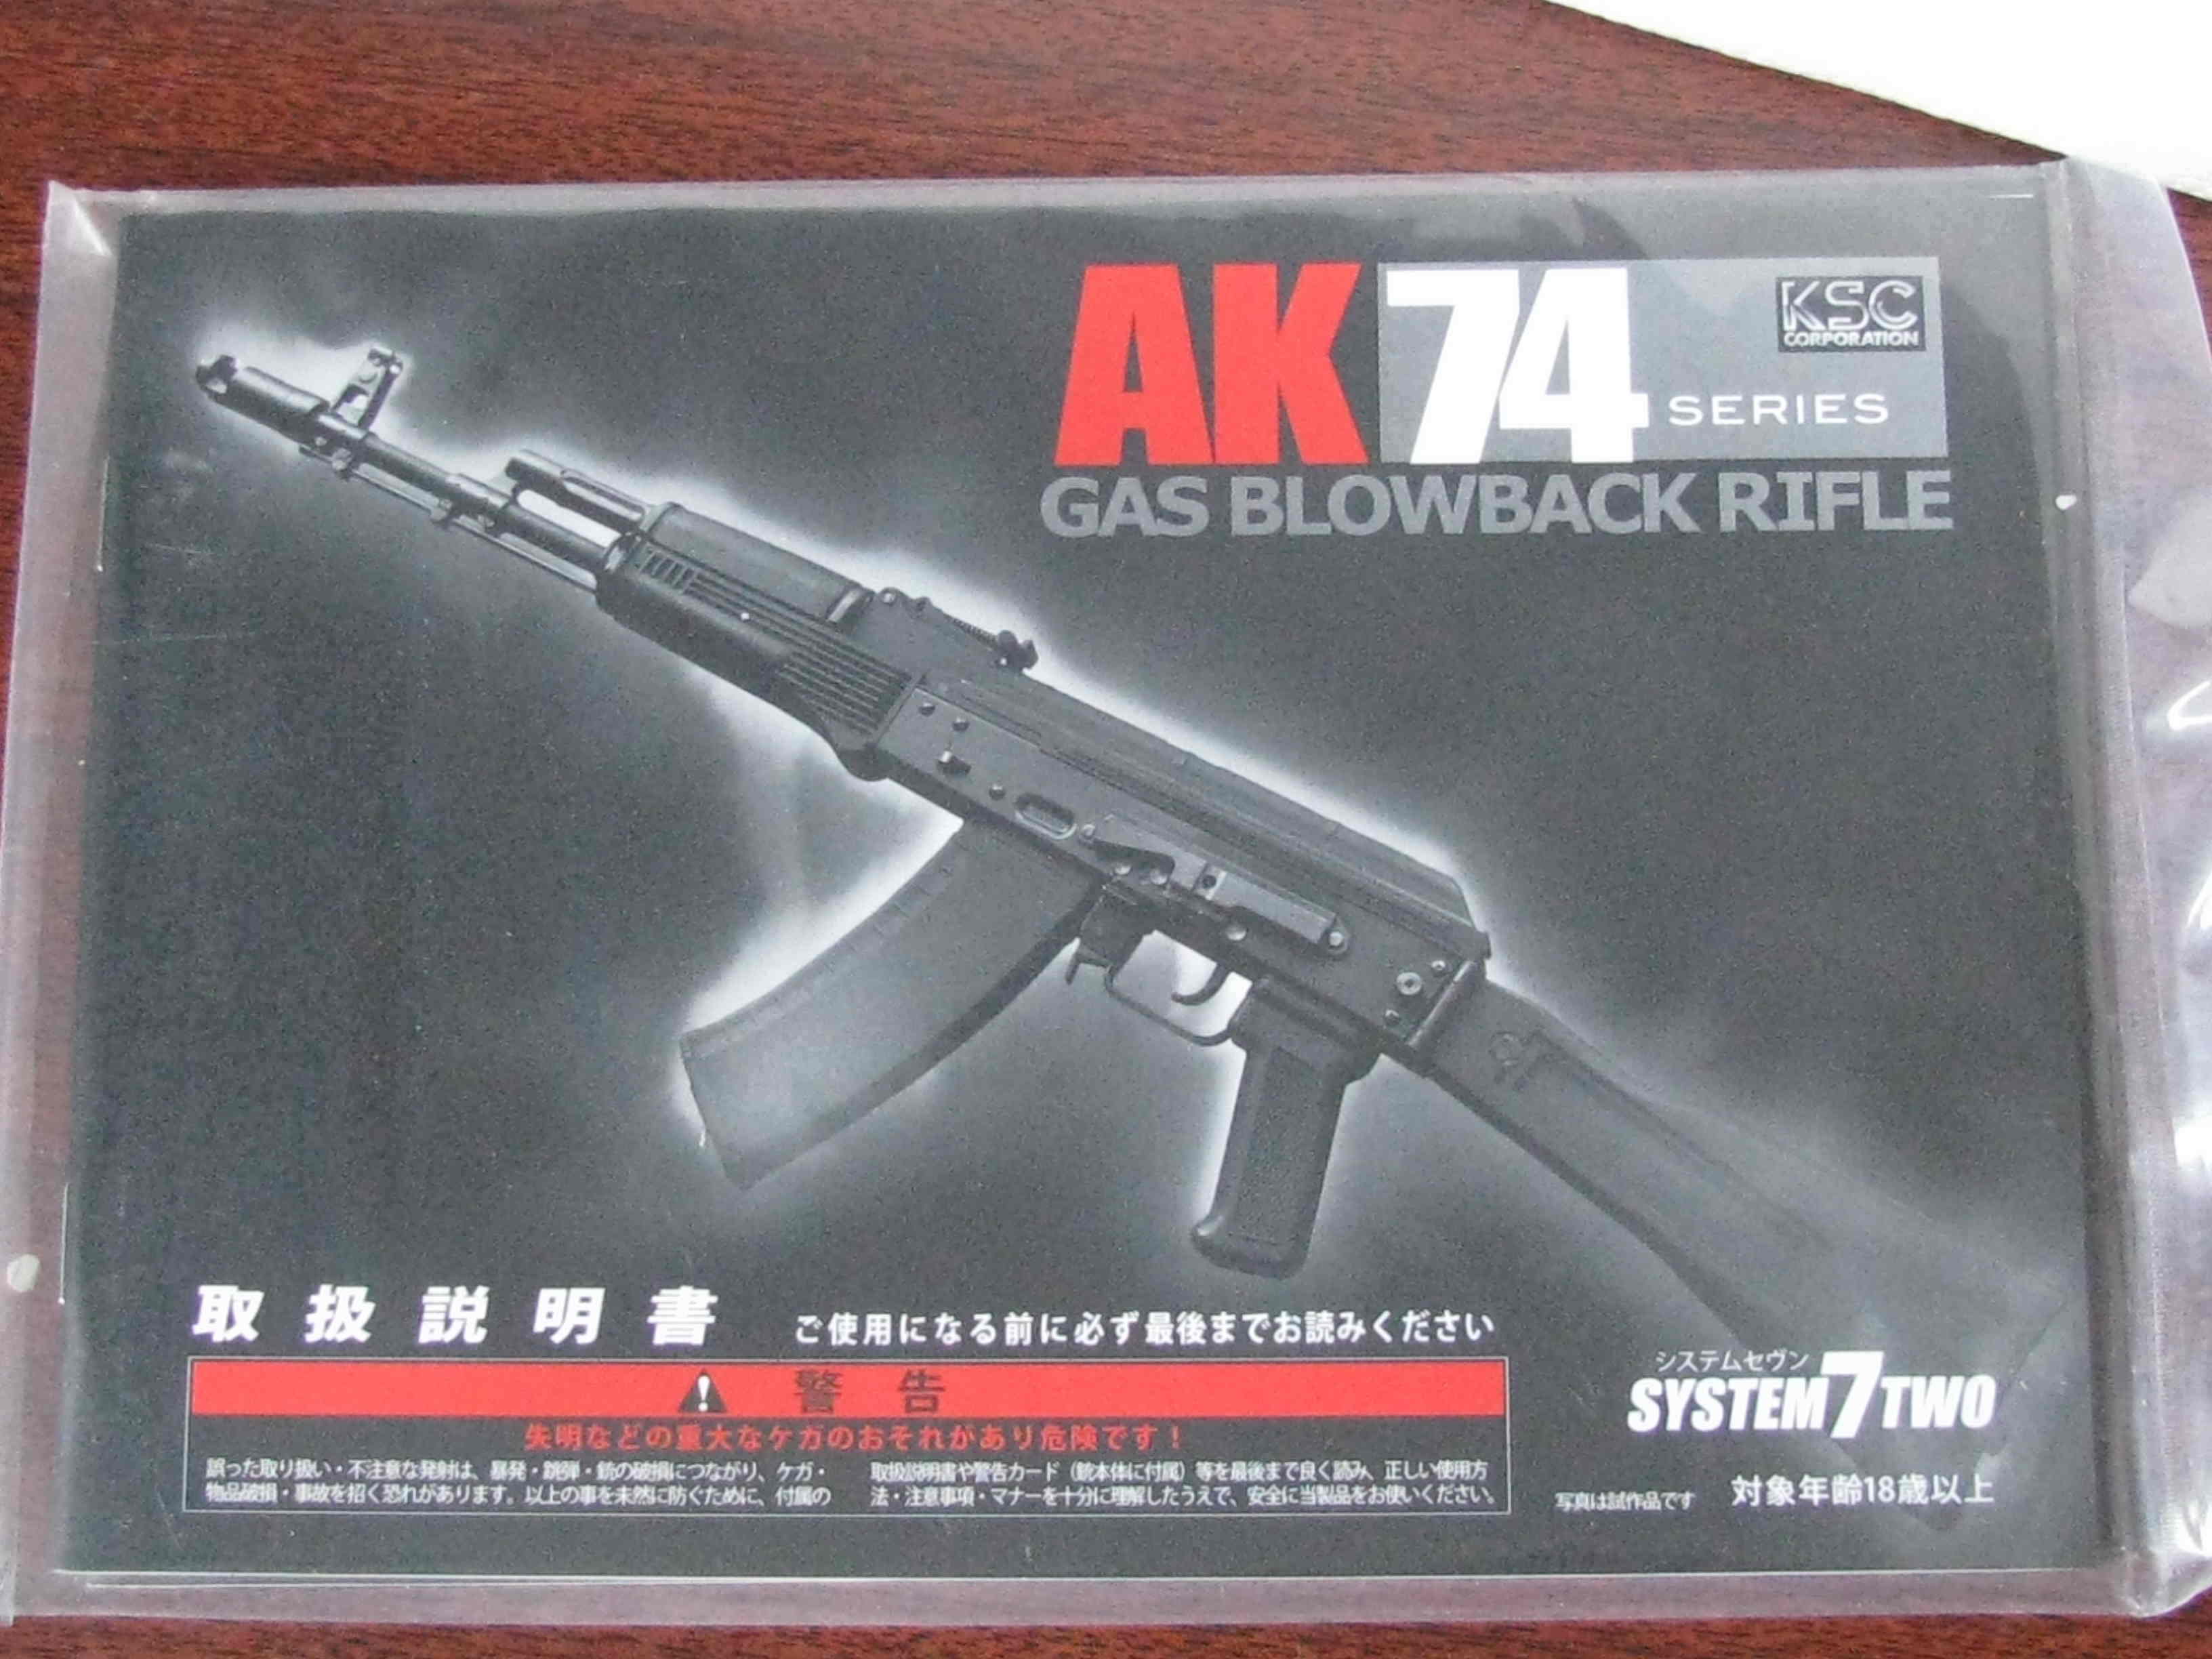 AK-74M от KSC, GBR (Автомат Калашникова, АК-74М страйКбольный)